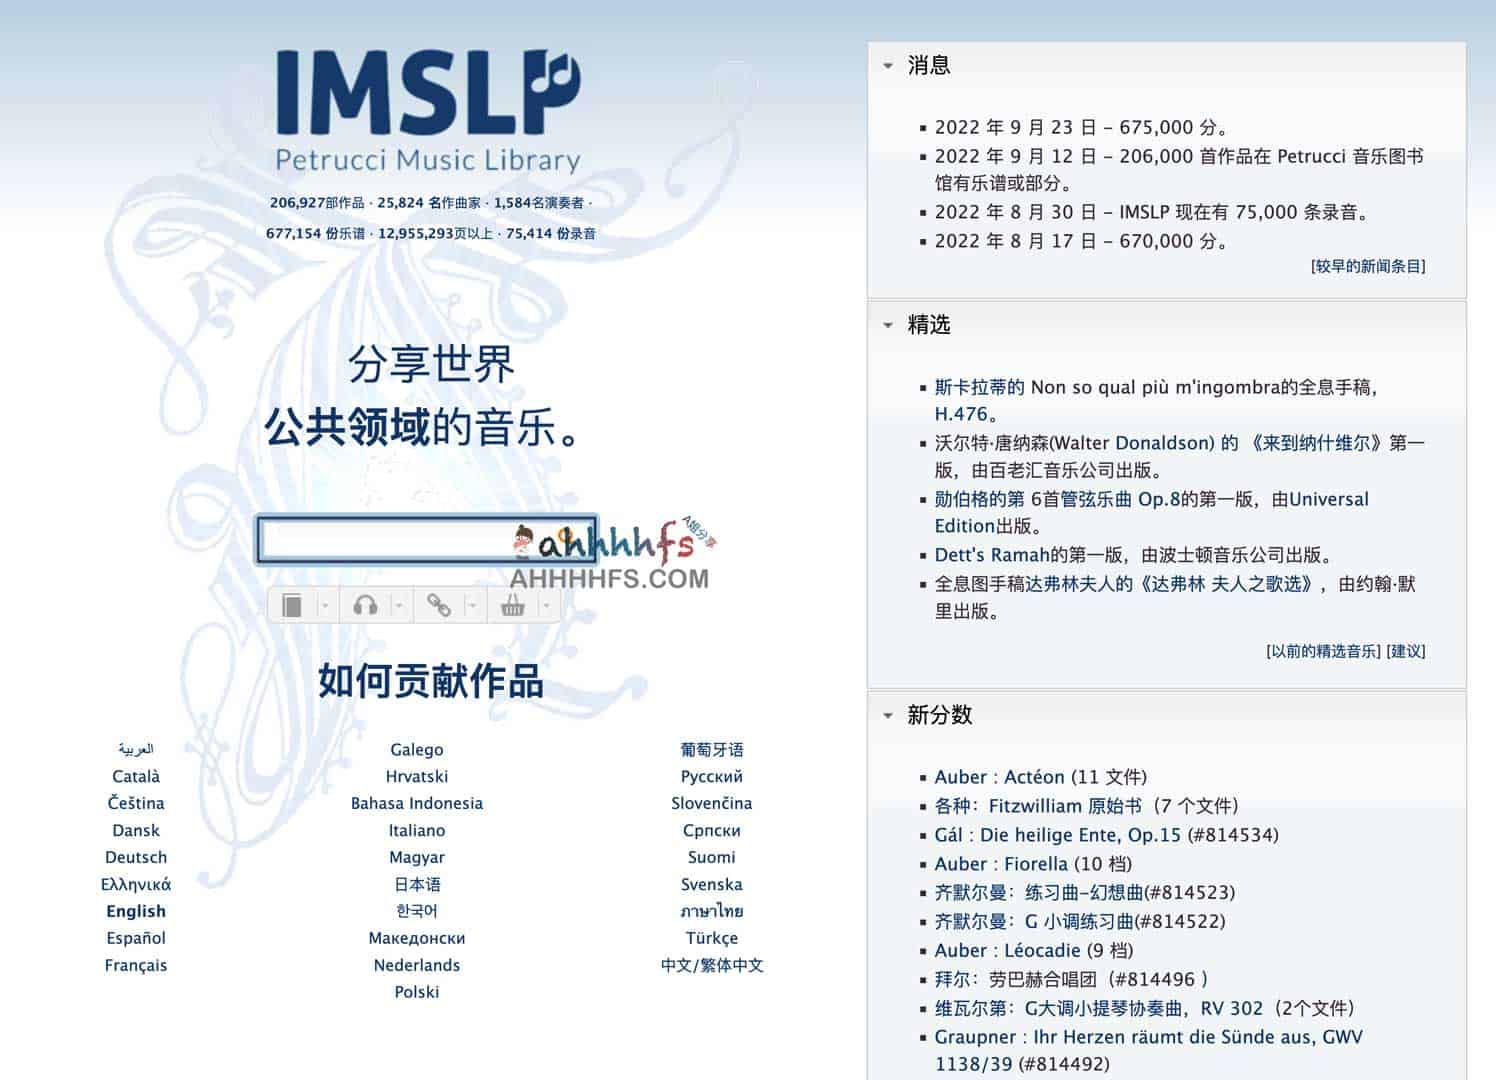 免费乐谱下载-国际音乐乐谱图书馆项目 (IMSLP)